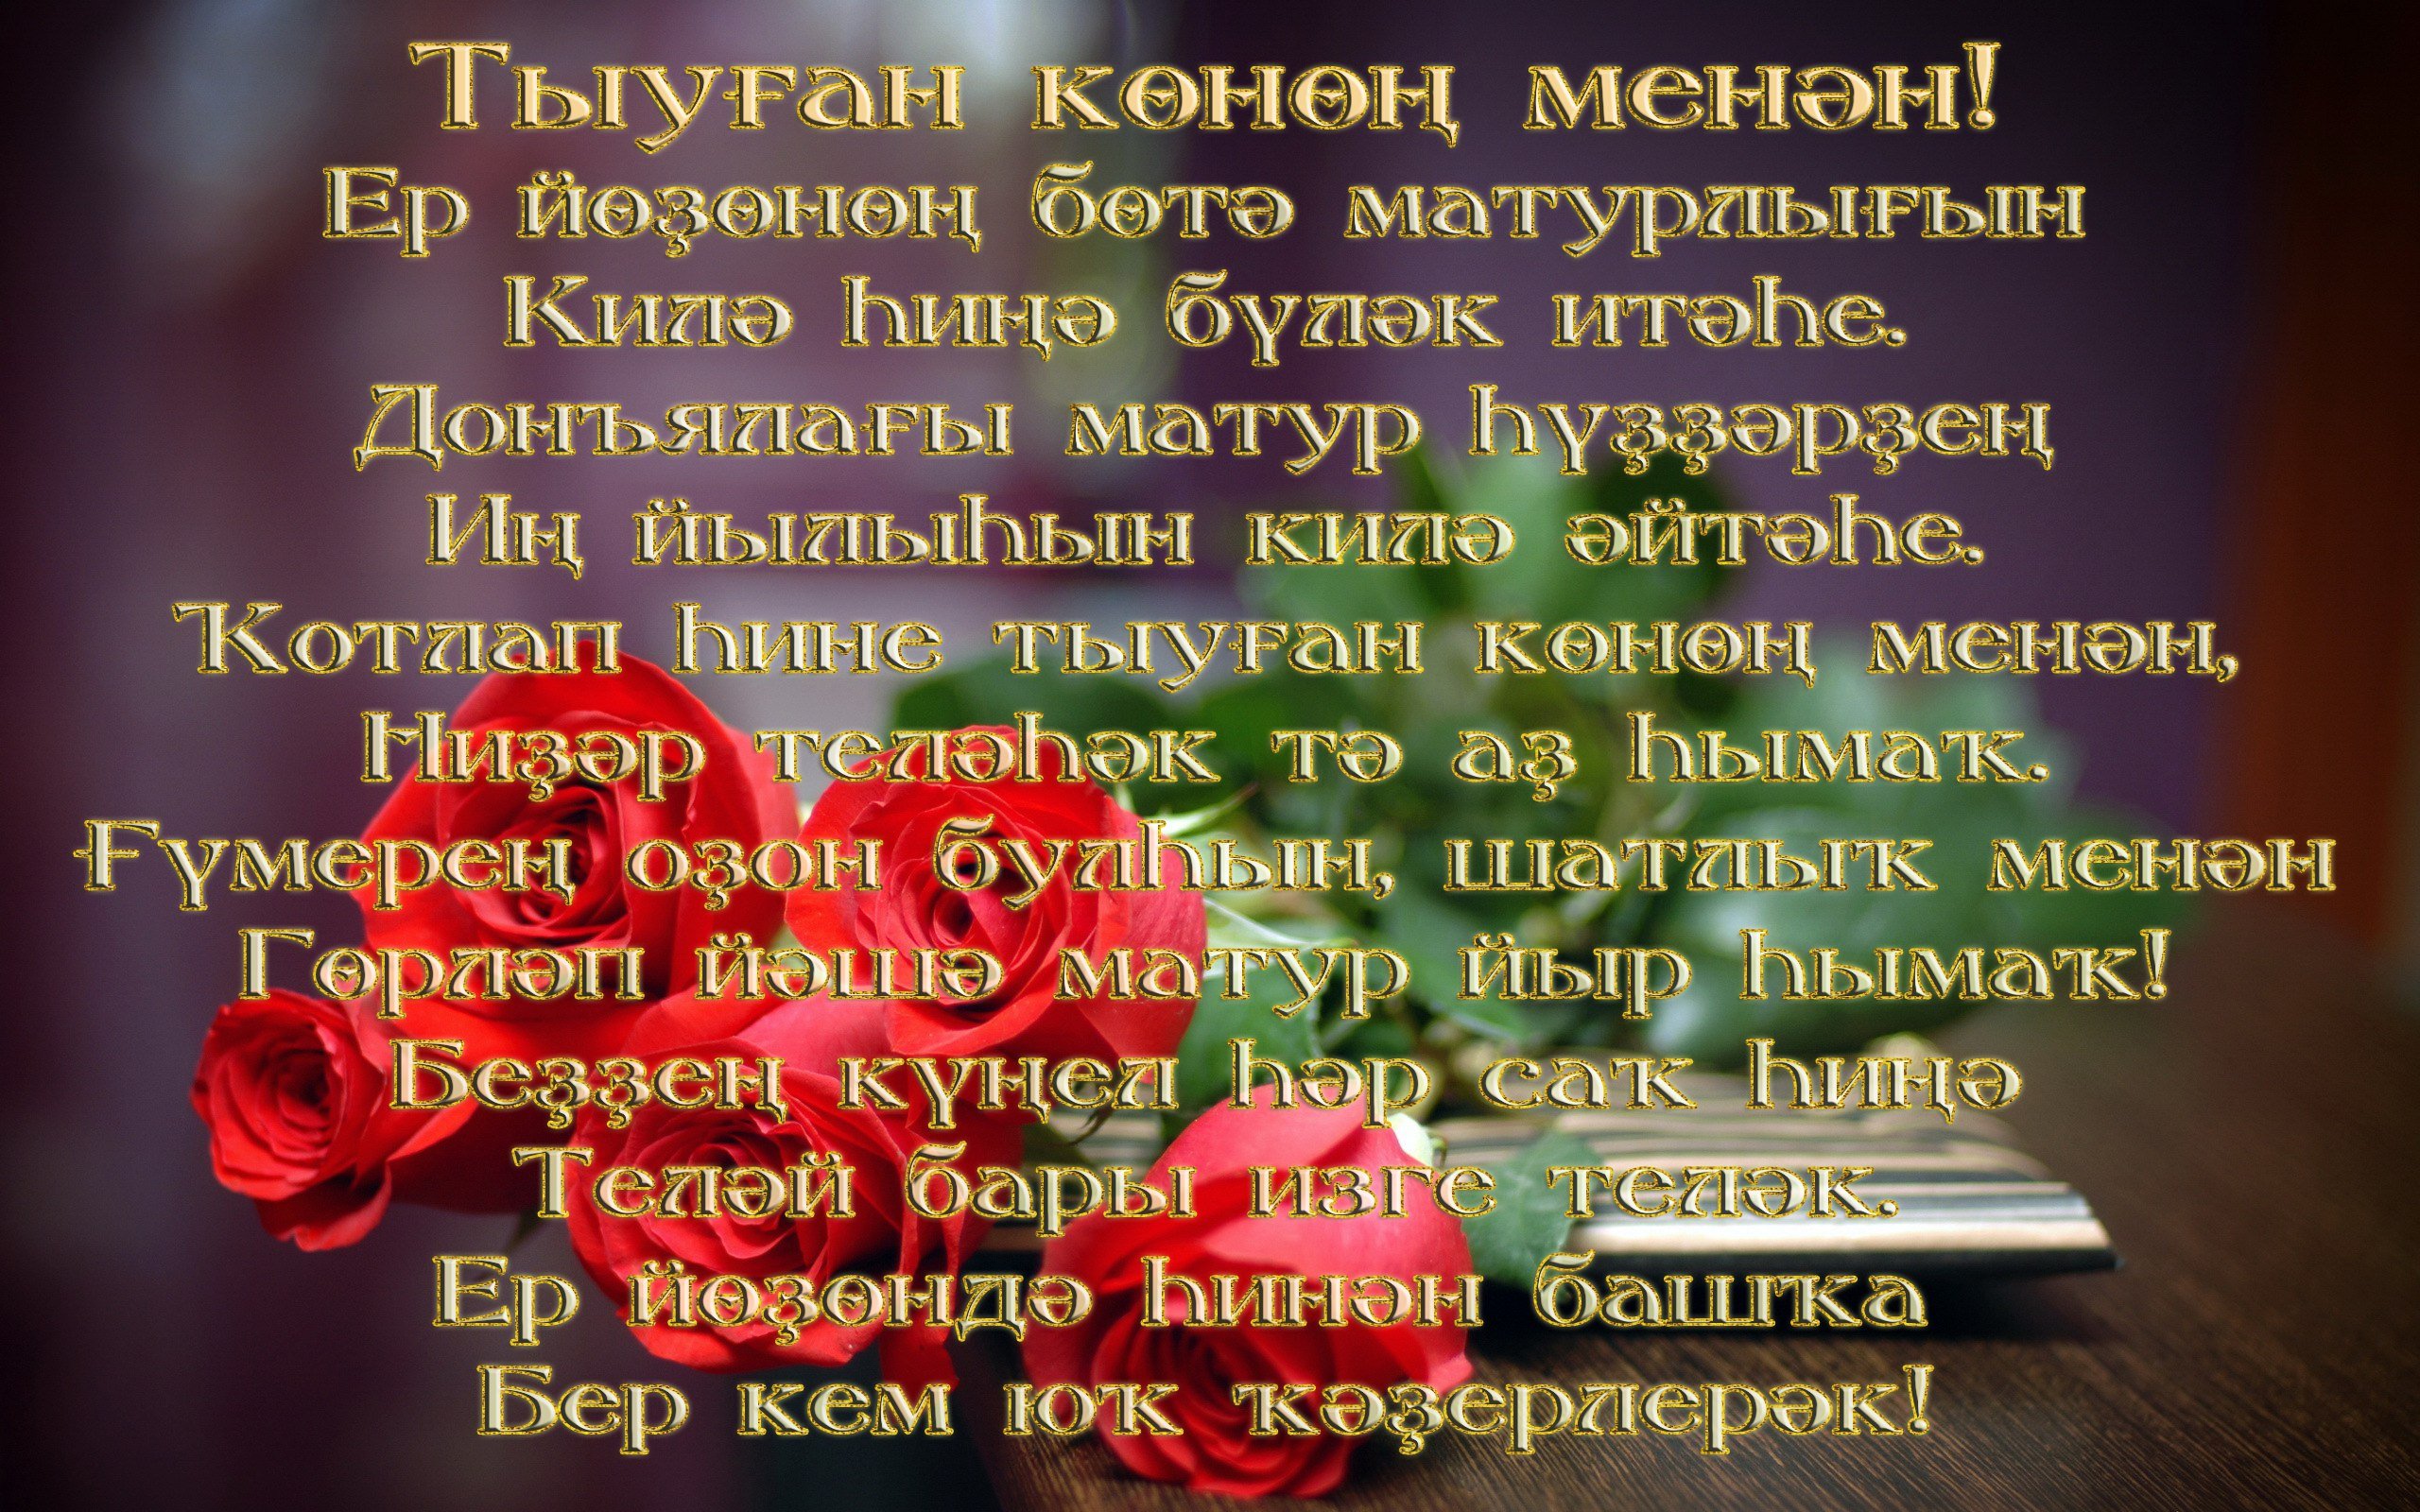 Поздравление сестры на башкирском языке. Поздравления на башкирском. Поздравления с днём рождения на башкирском языке. Поздравления башкирском языке женщине. Поздравление с юбилеем на башкирском.